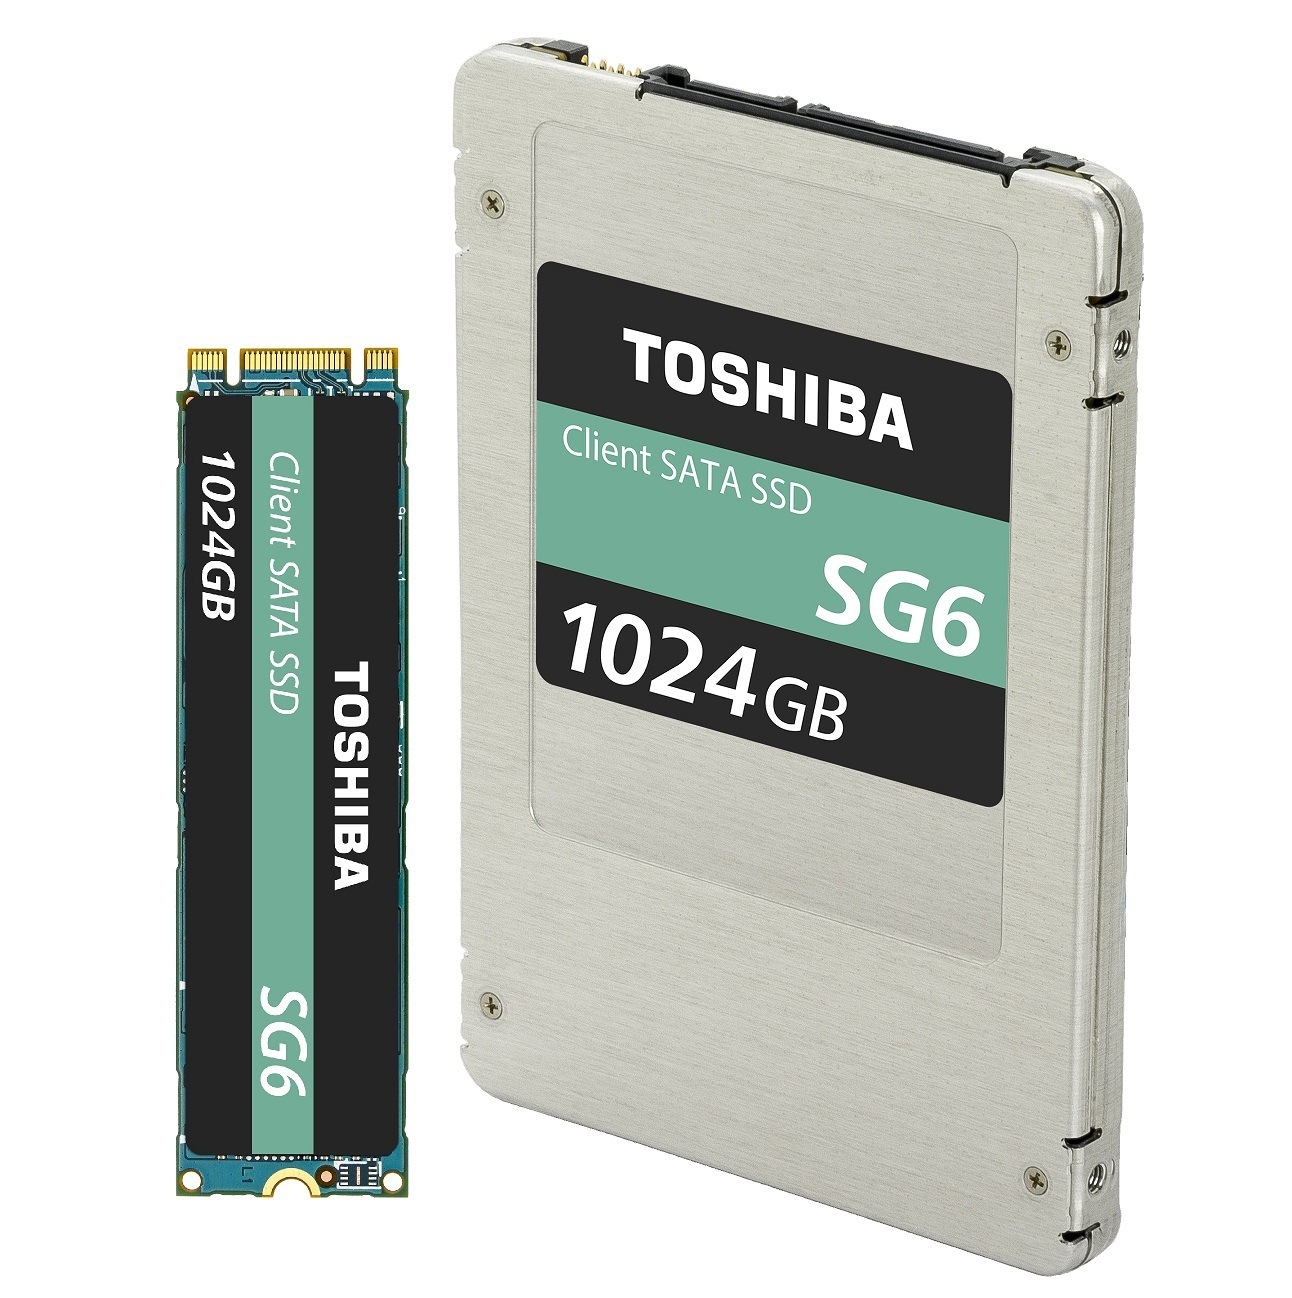 Toshiba анонсировала новую серию дисков SG6 SATA на базе 64-уровневой 3D флэш-памяти